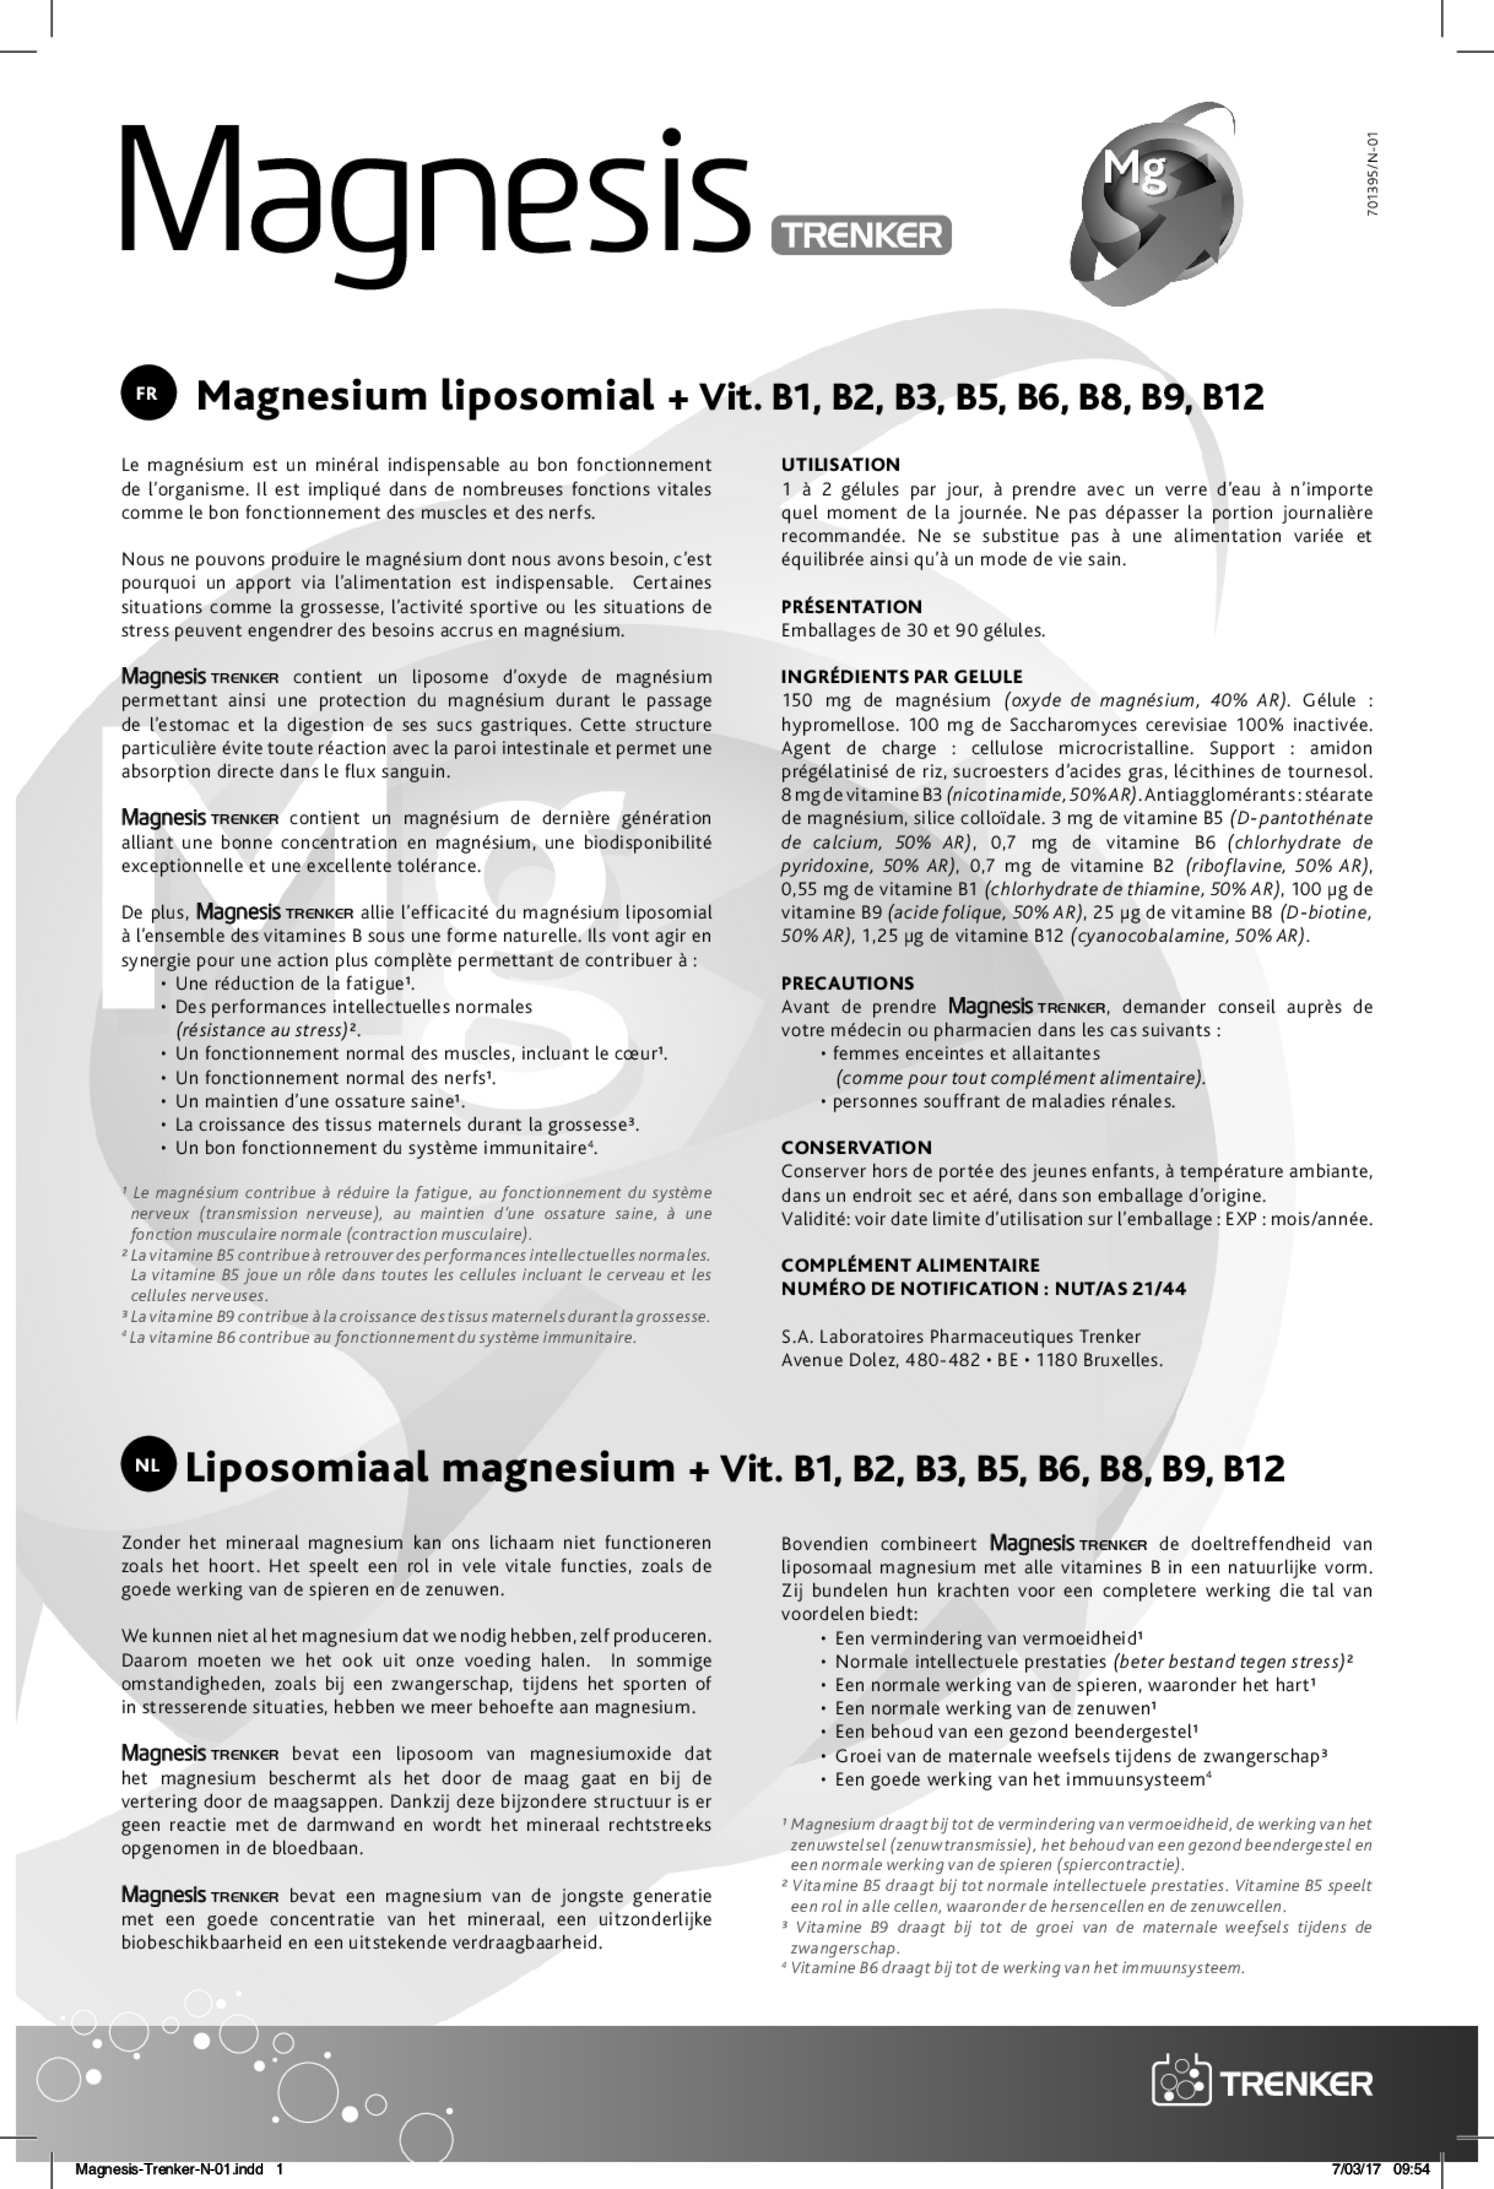 Magnesis Capsules afbeelding van document #1, gebruiksaanwijzing